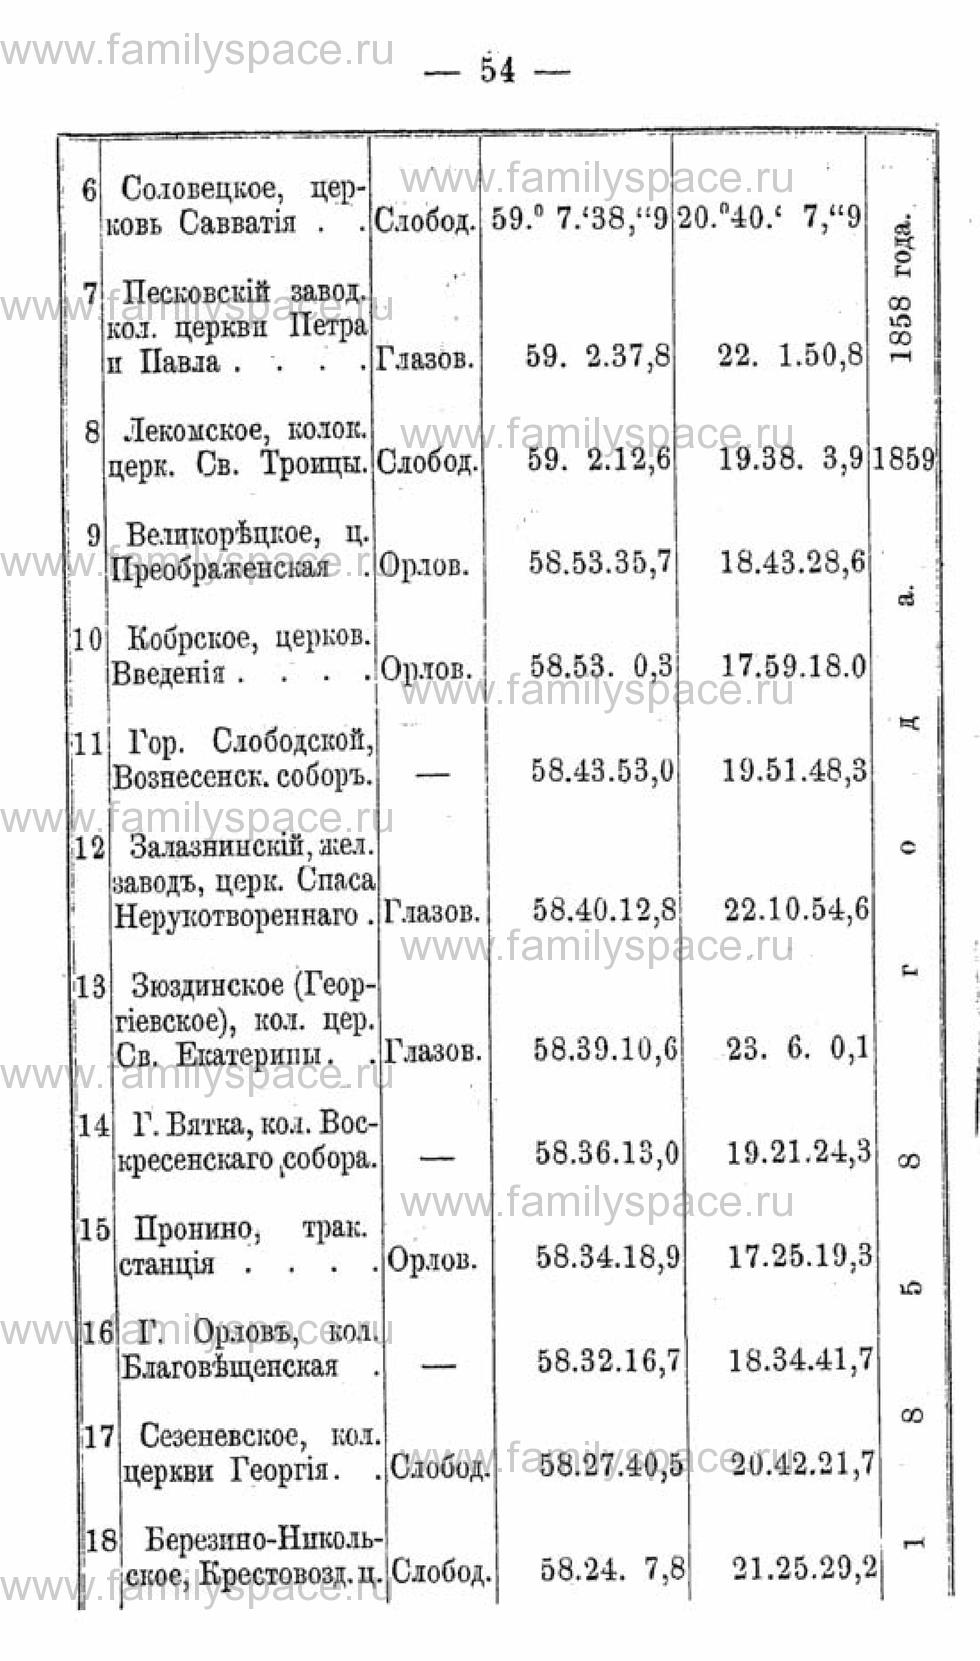 Поиск по фамилии - Календарь Вятской губернии - 1880, страница 1054